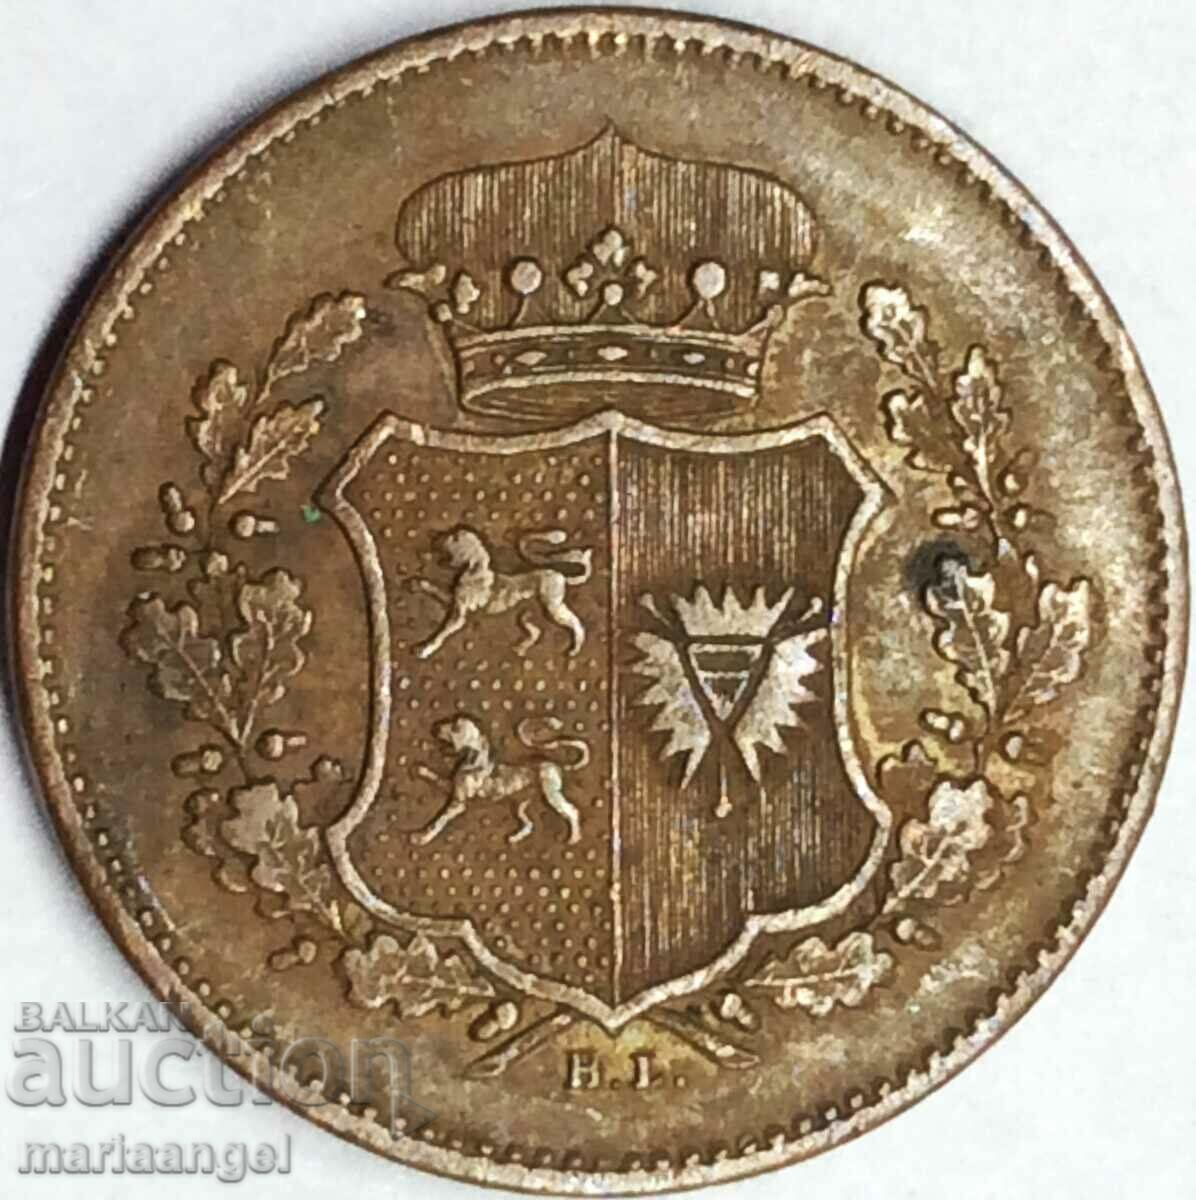 Schleswig-Holstein 1 Zechsling 1850 Germany 27mm 9.59g Rare